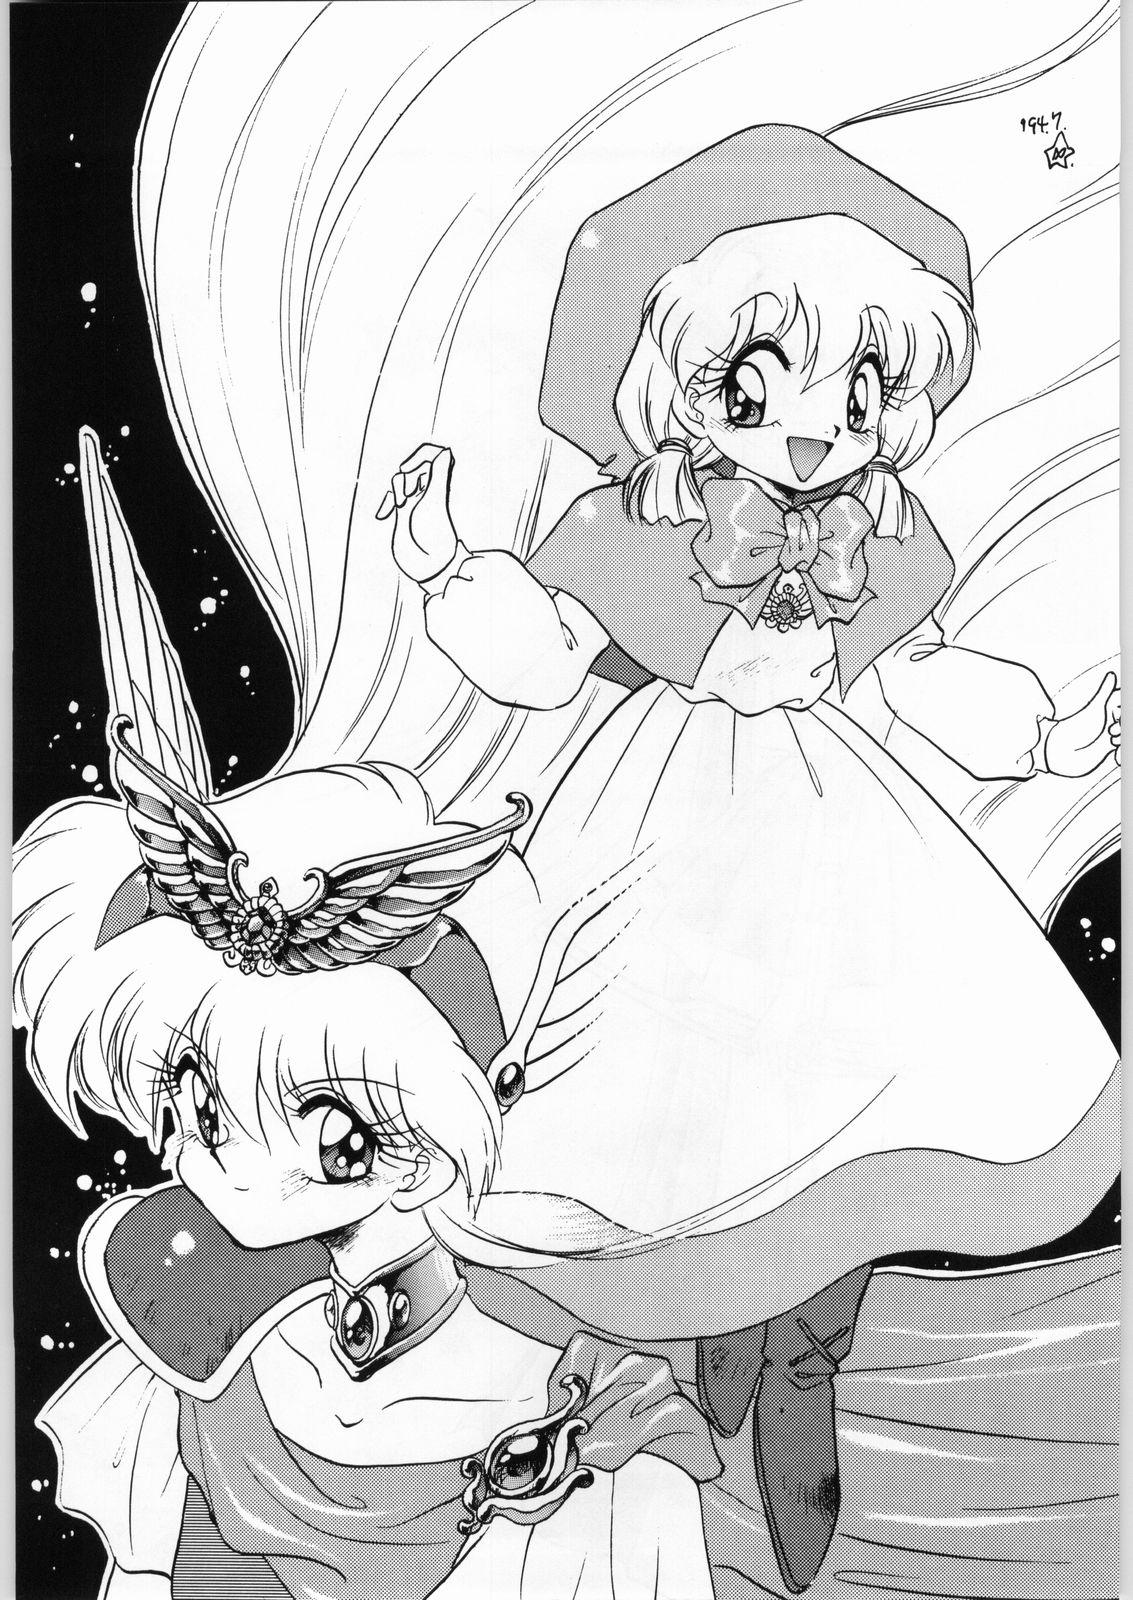 Big Boobs Dance of Princess 3 - Sailor moon Tenchi muyo Akazukin cha cha Minky momo Ng knight lamune and 40 Asslicking - Page 4